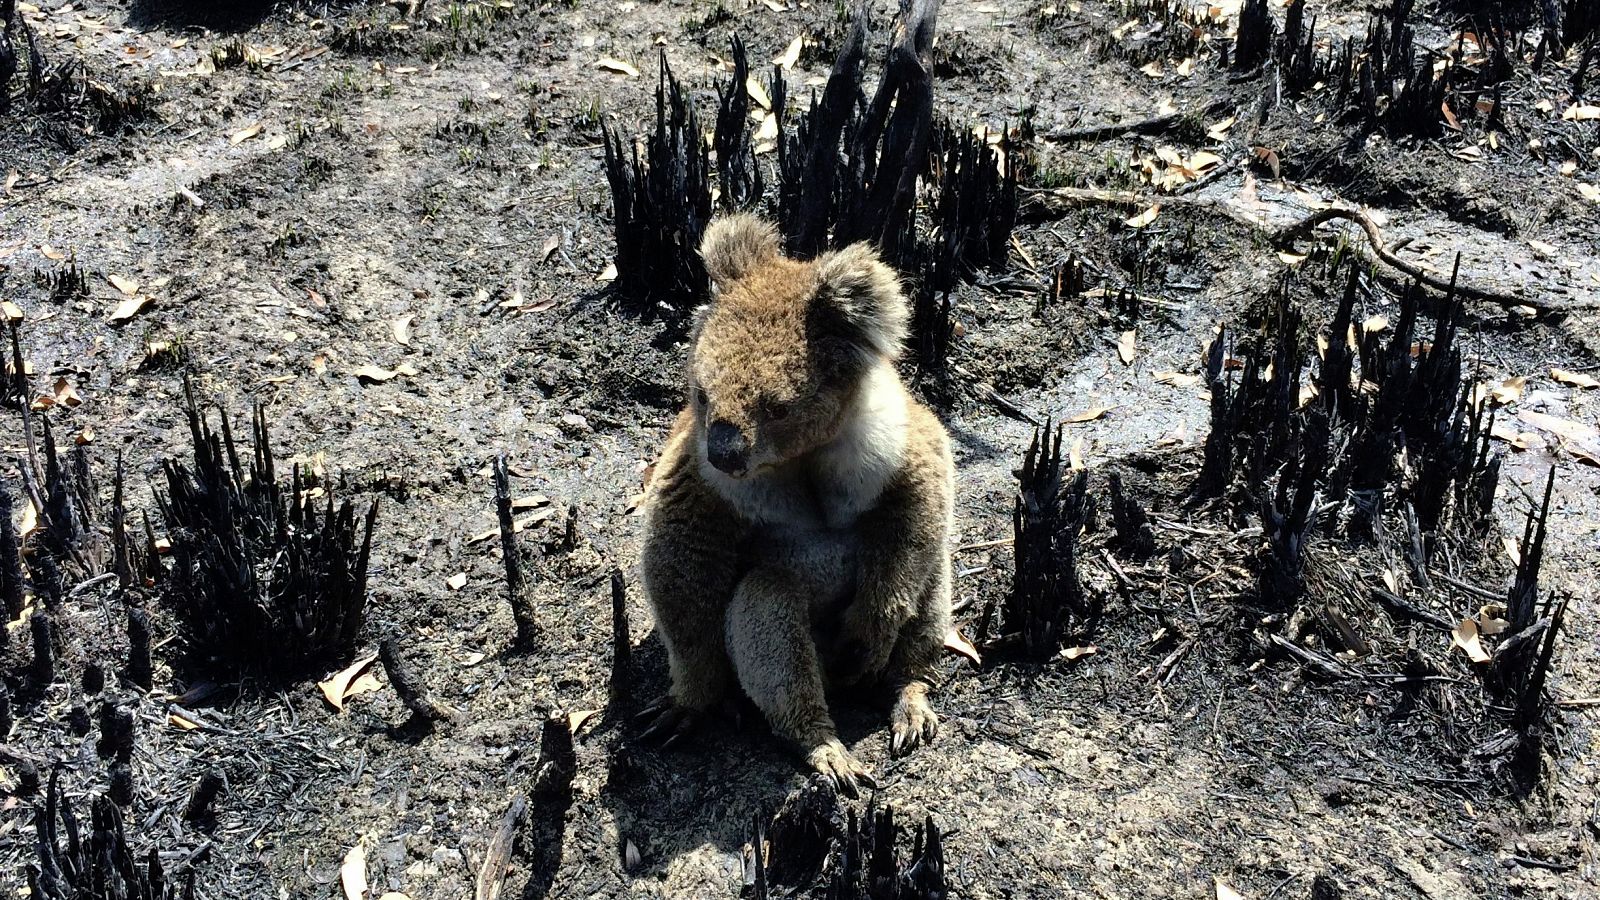 La oleada de incendios forestales que está azotando desde hace meses la costa este de Australia ya se ha cobrado la vida de 29 personas y de centenares de millones de animales.